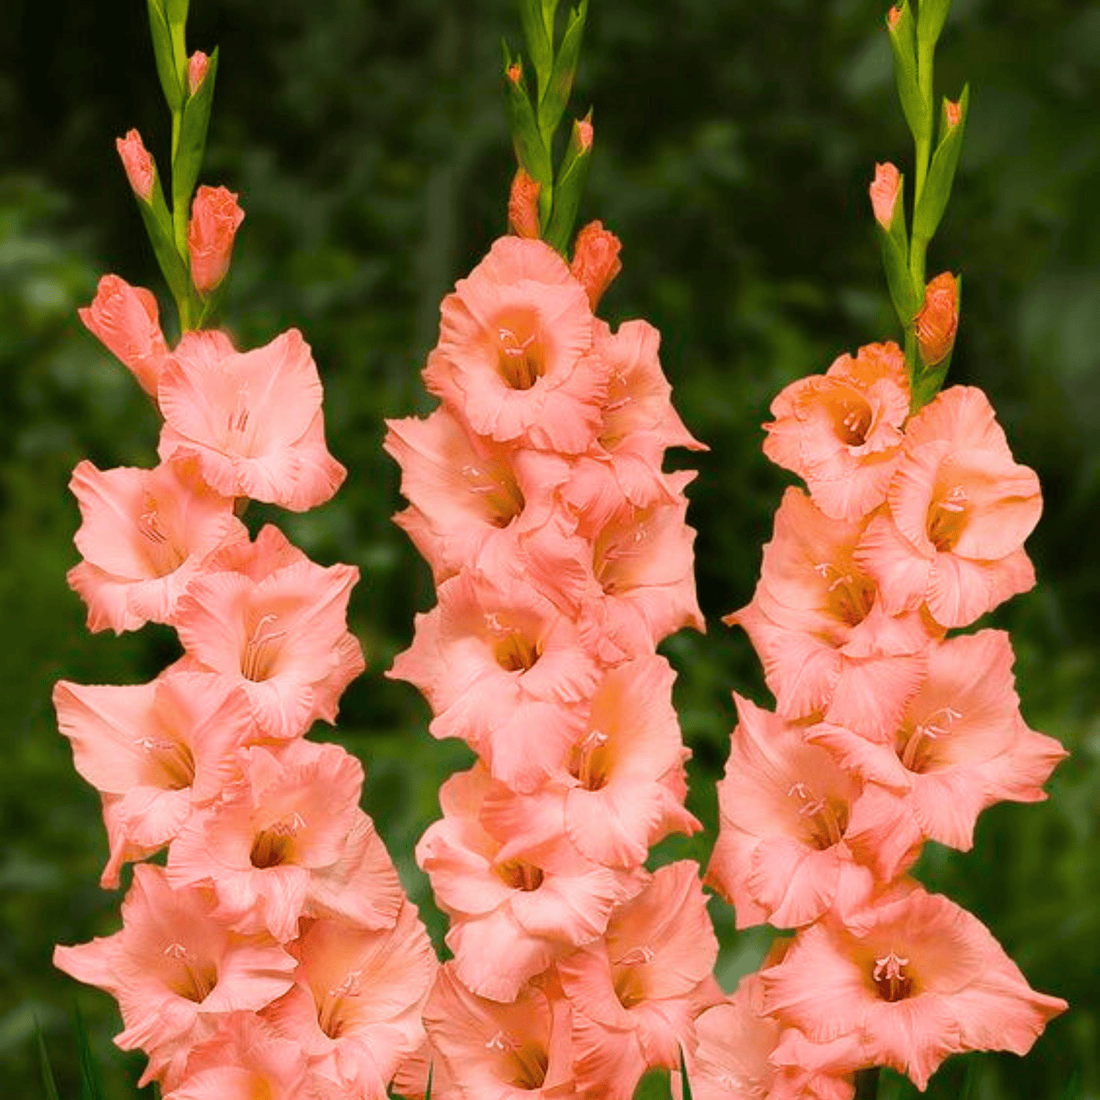 Gladiolus Light Pink Flowering Live Plant